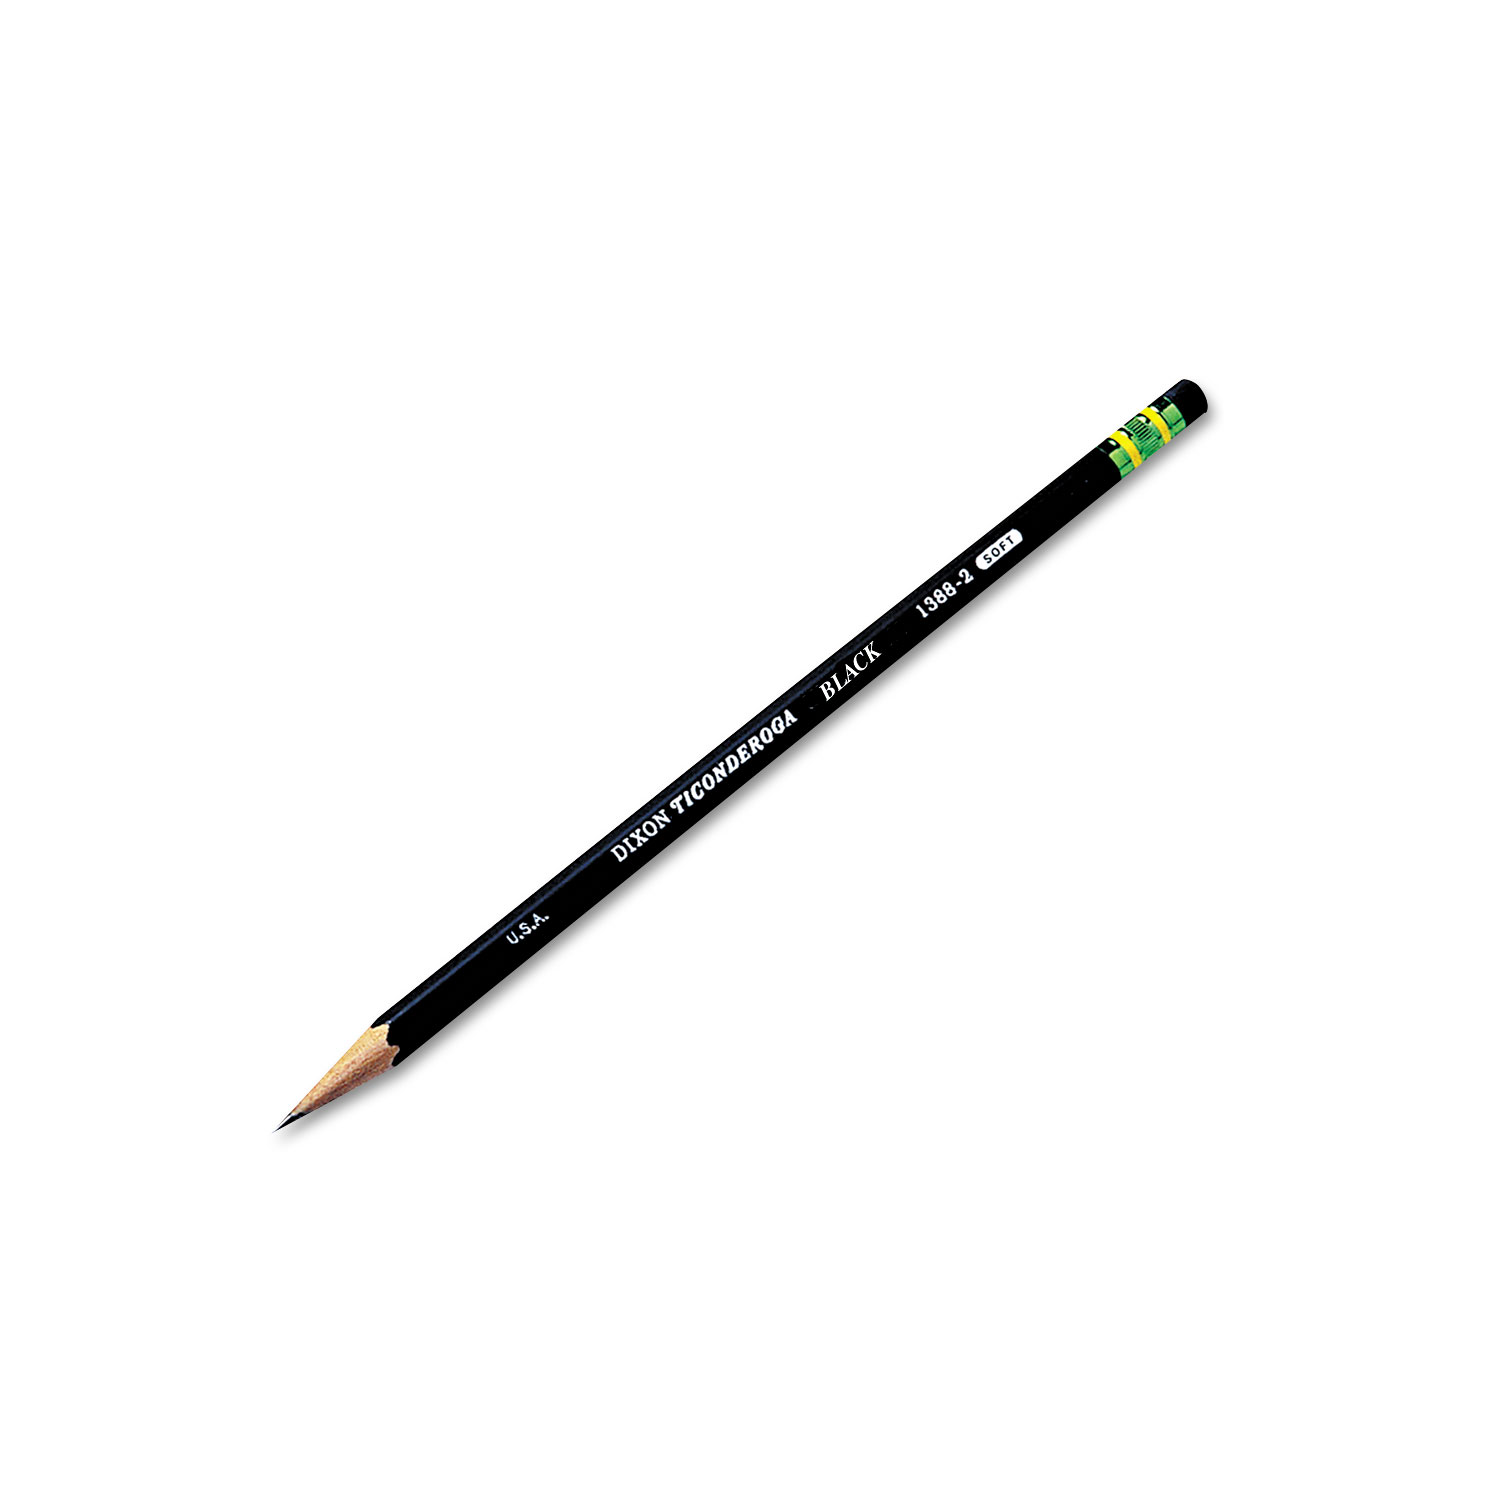 DIX13882,Dixon Ticonderoga 12 dozen Woodcase Pencil,Hb #2 Yellow Barrel =144 